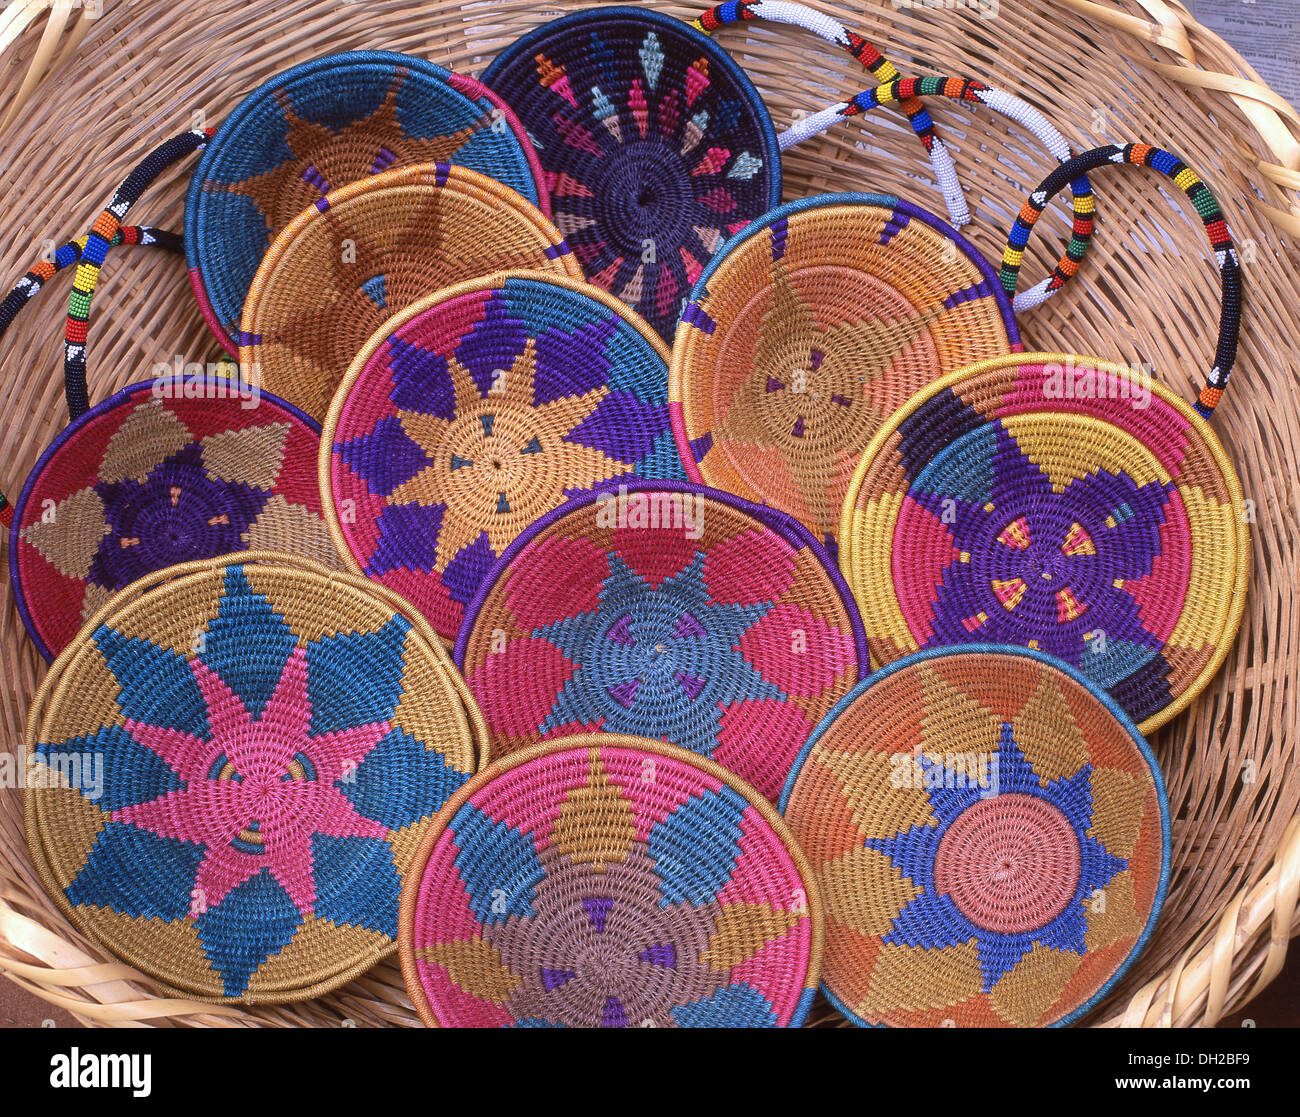 Souvenirs de paniers tissés sur le marché de l'artisanat swazi, Mbabane, district de Hhohho, Eswatini (Swaziland) Banque D'Images